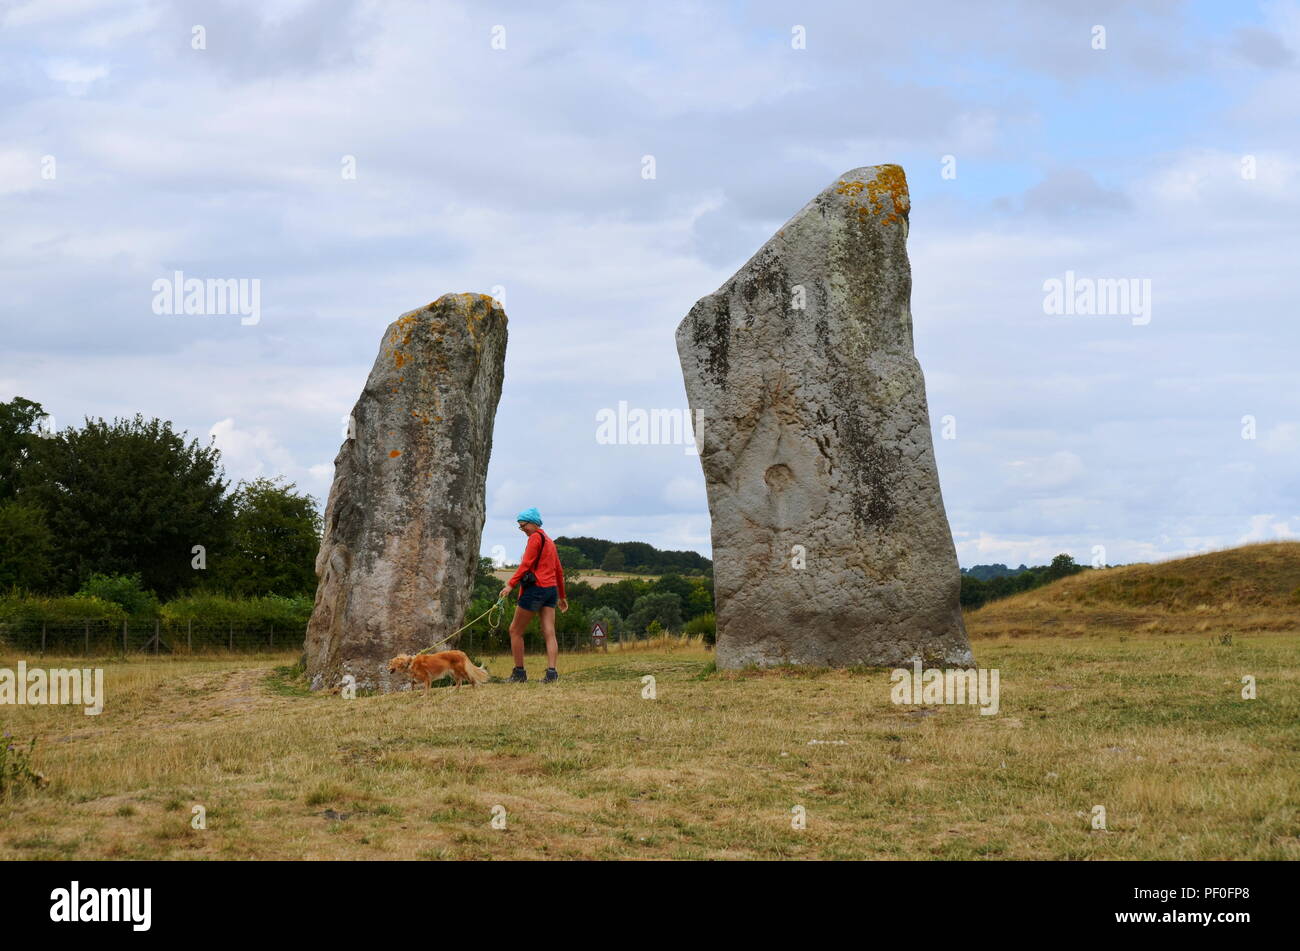 Une femme promener son chien à Avebury, un monument contenant trois cercles de pierres, autour du village d'Avebury dans le Wiltshire, dans le sud-ouest de l'Angleterre. Banque D'Images